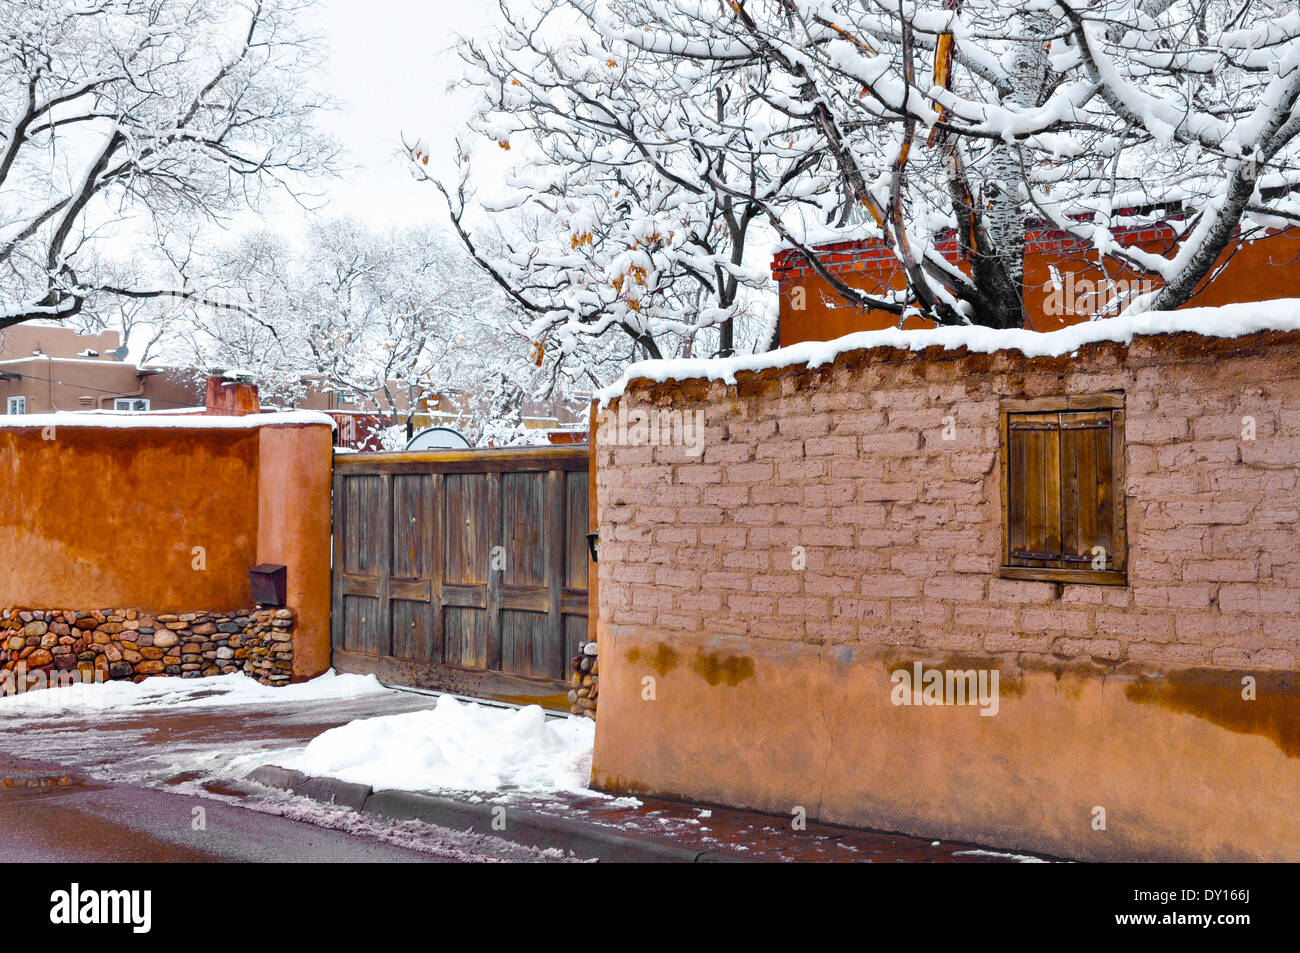 Ein Winter-Schnee-Szene verfügt über alte und neue Adobe Wände und Holztor in Baum beladen Canyon Road Gegend von Santa Fe, NM Stockfoto